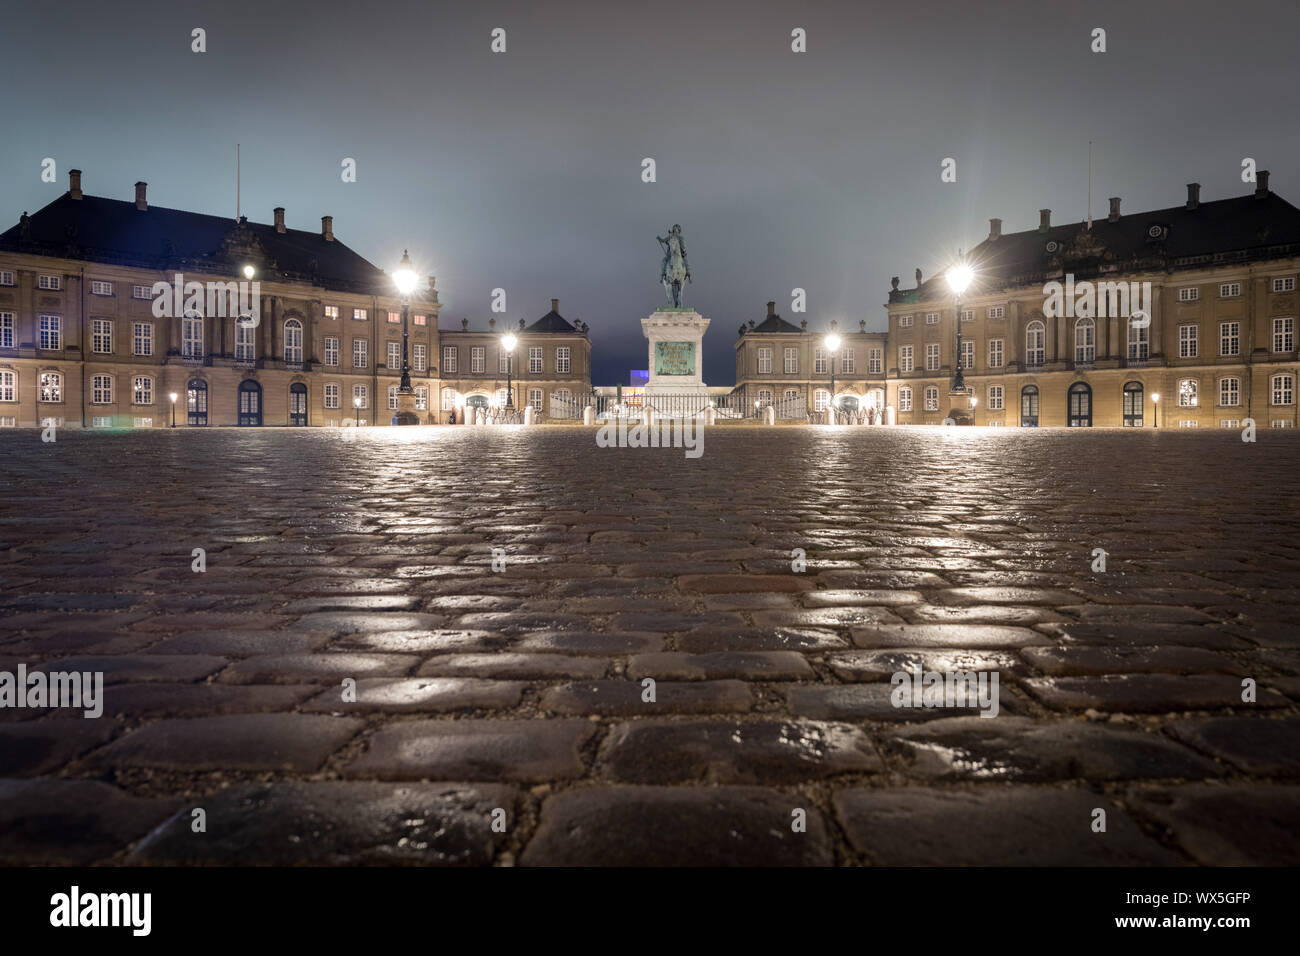 Le Palais d'Amalienborg à Copenhague par nuit Banque D'Images